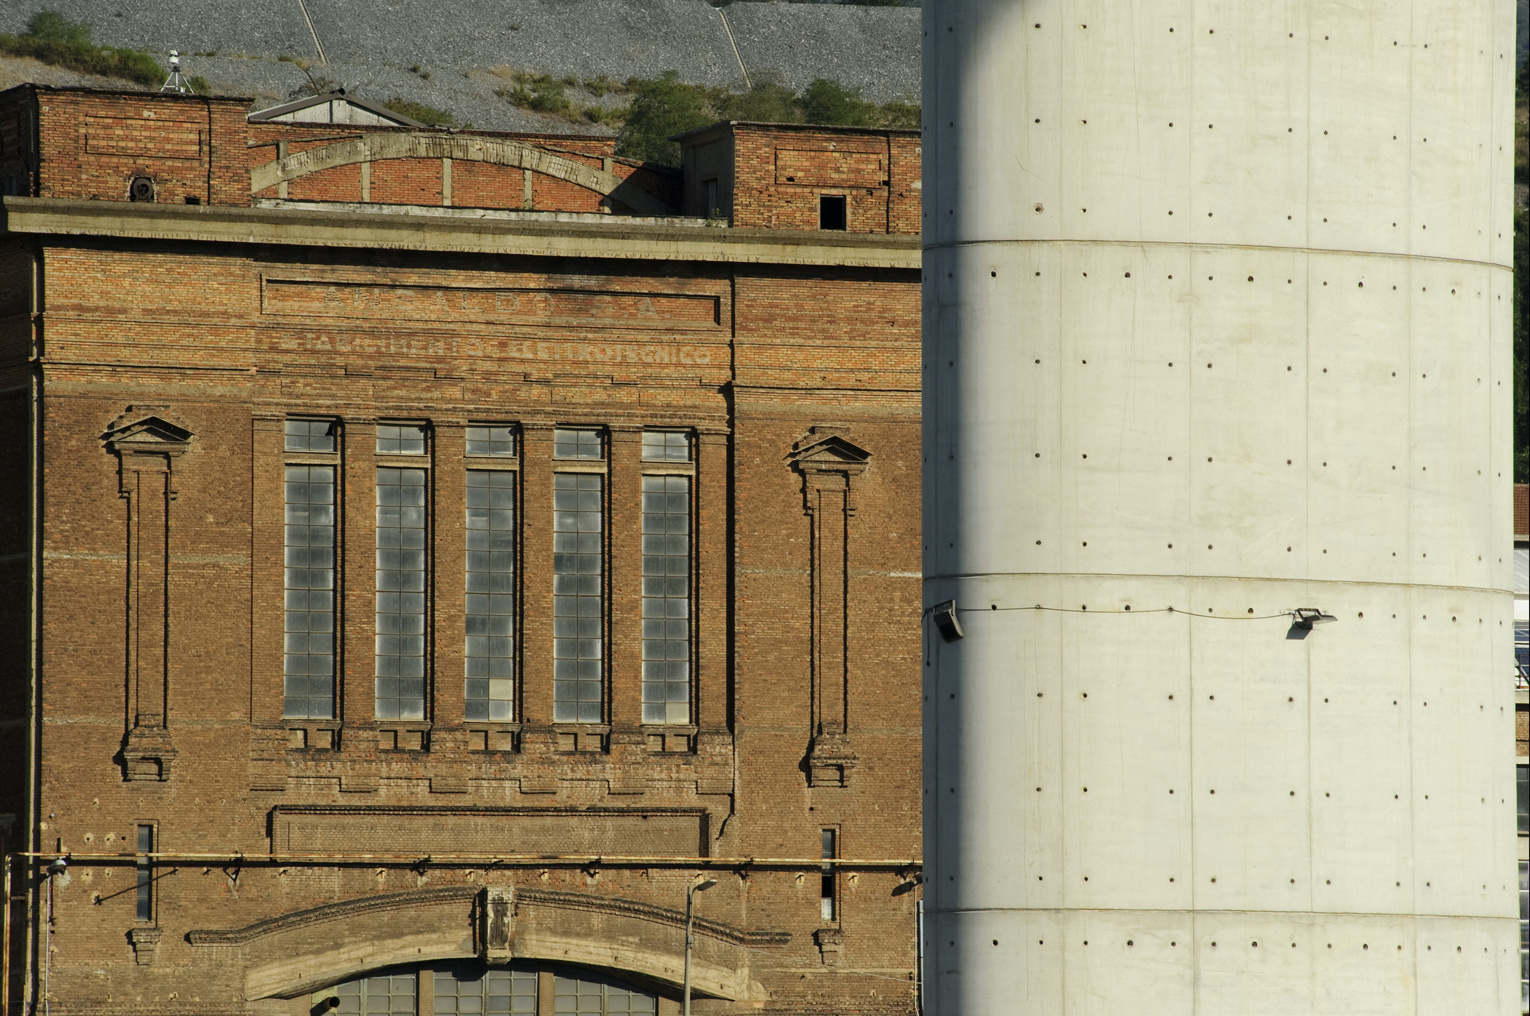 Dettaglio di una delle pile in calcestruzzo del ponte Genova San Giorgio